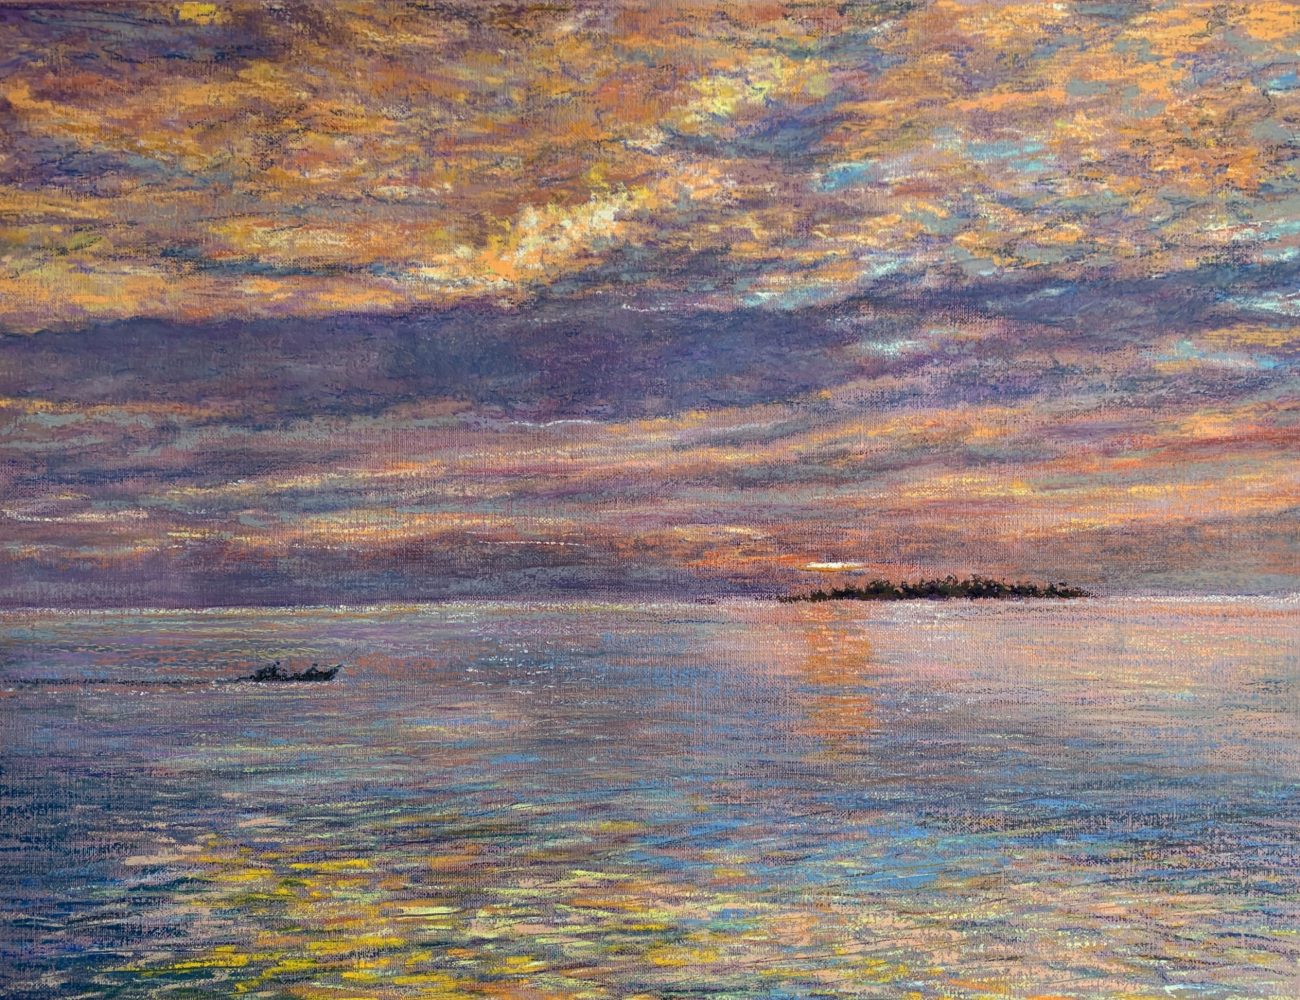 закат в океане картина масляная пастель пейзажи природы художник Альберт Сафиуллин